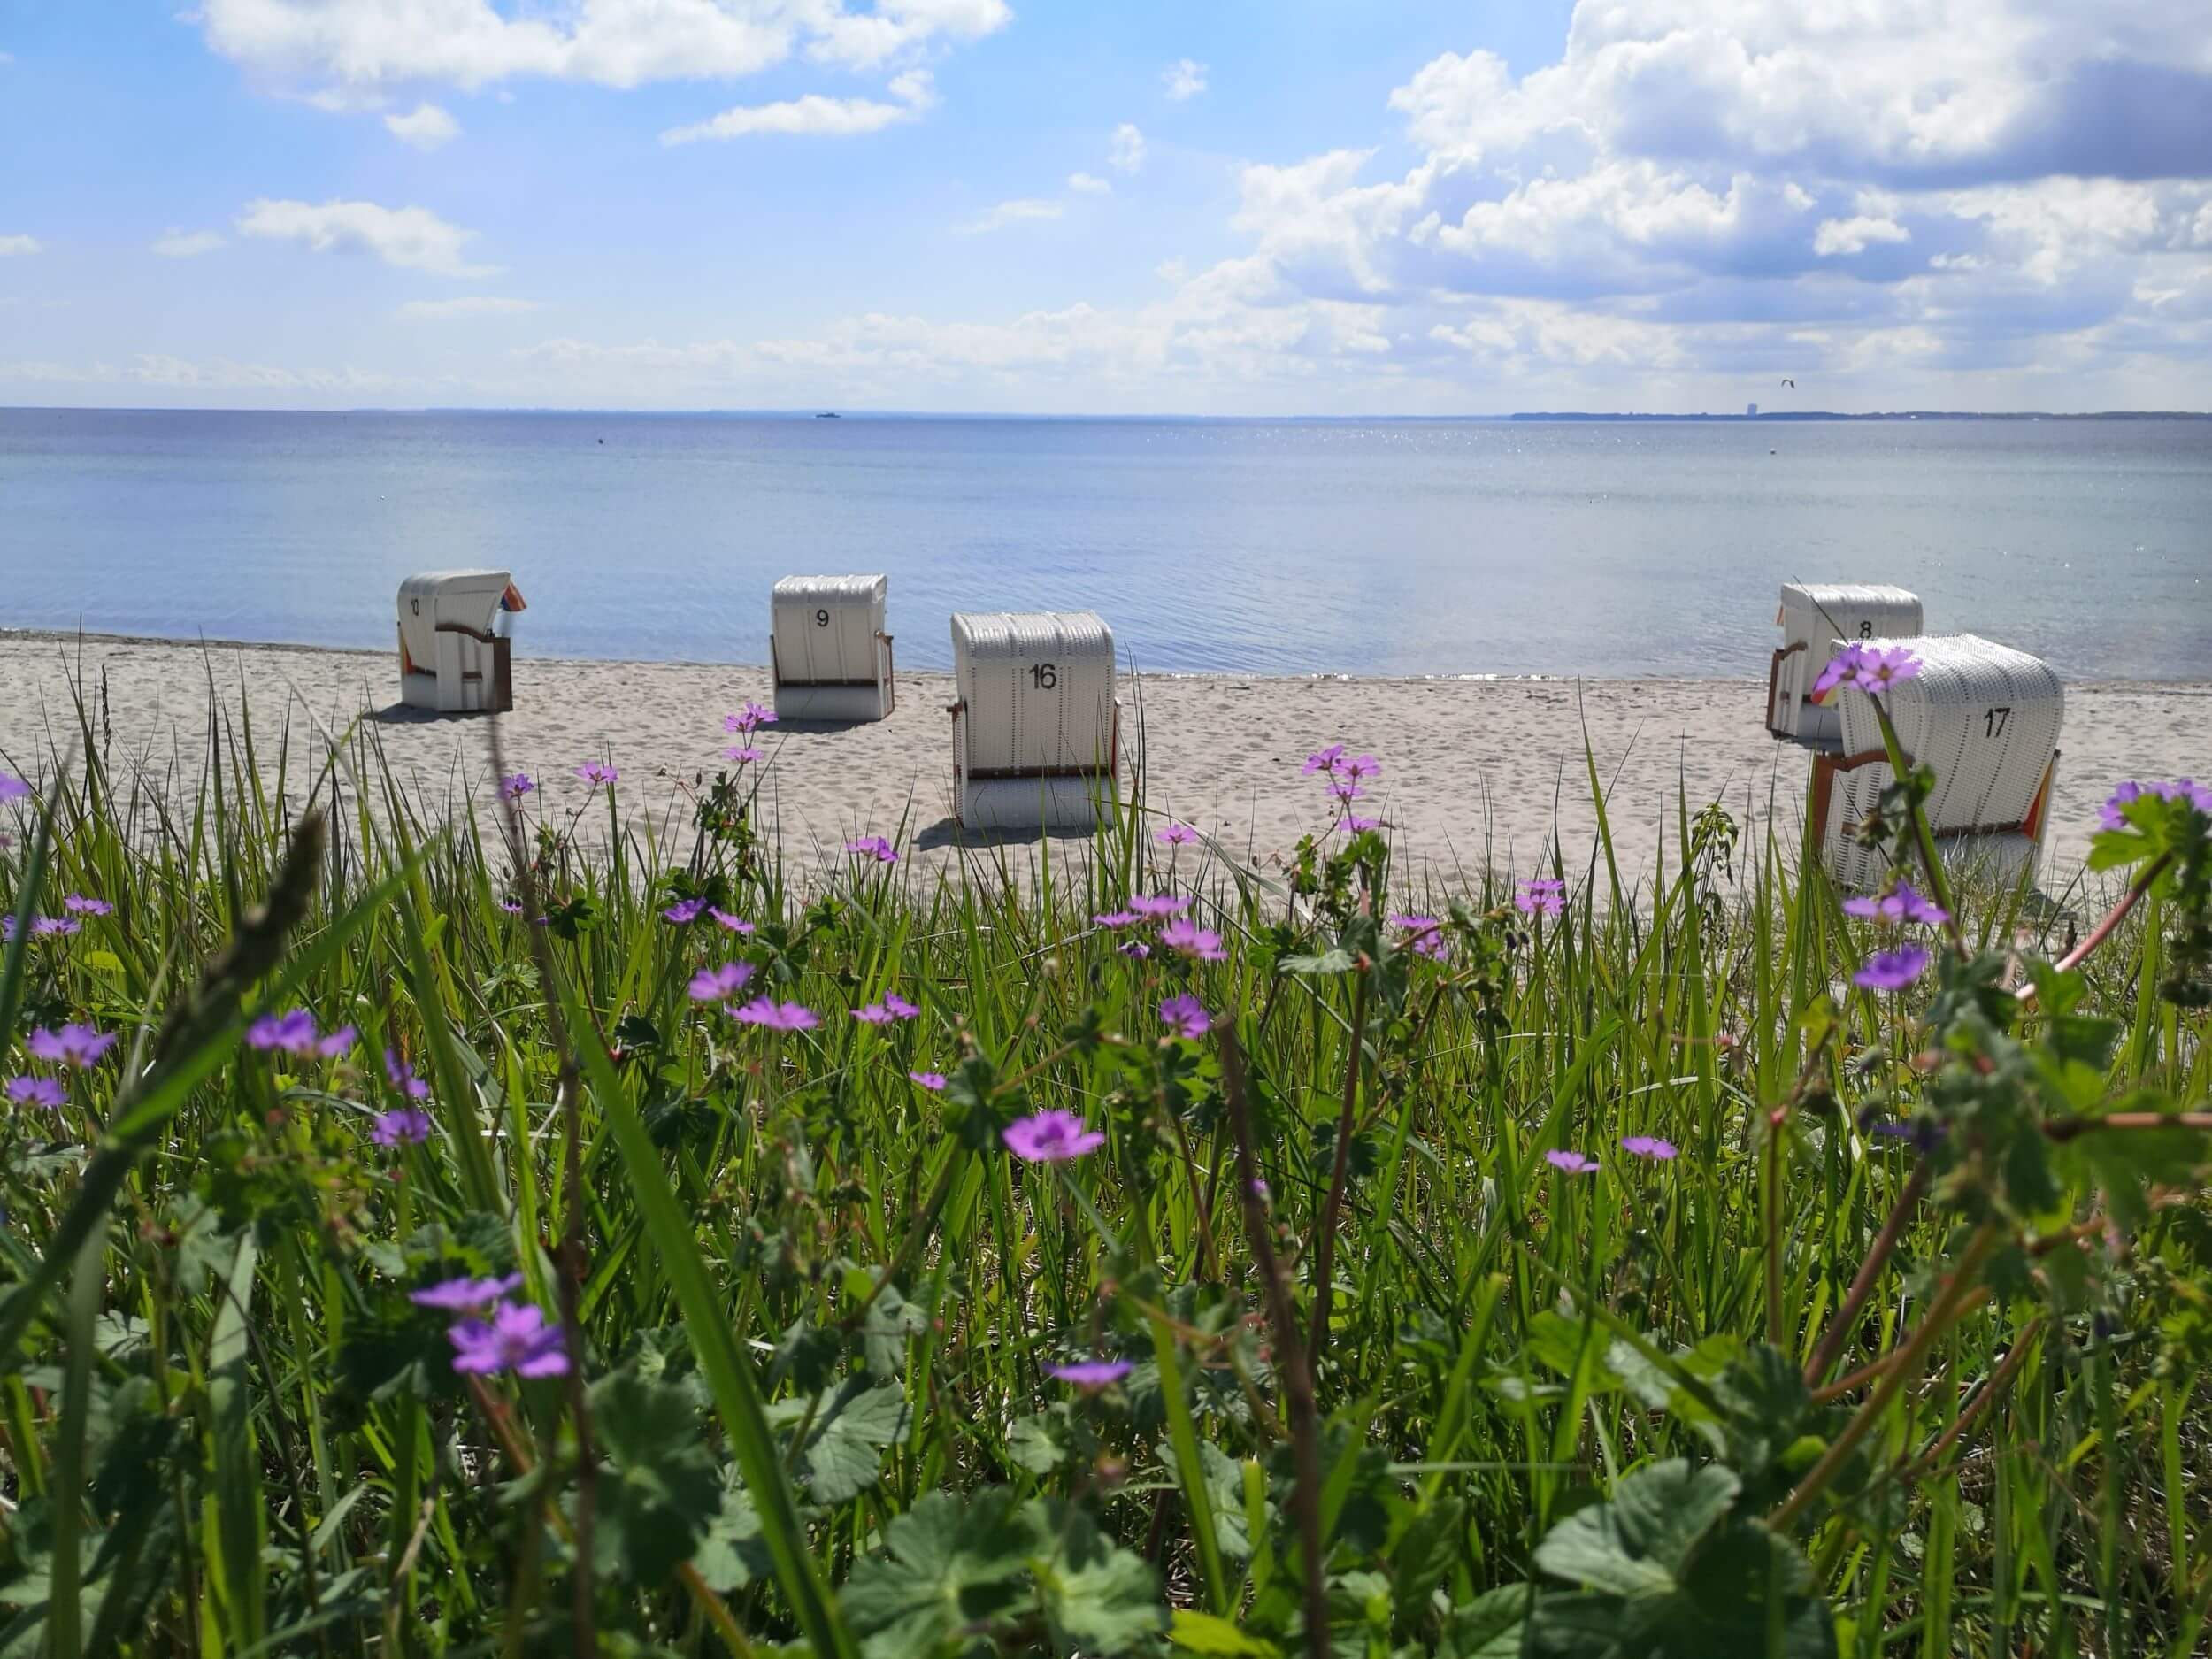 Ein Blick auf einen ruhigen Strand durch eine Wiese mit wilden, lila Blumen. Ein paar weiße Strandkörbe stehen am Sandstrand, ausgerichtet zum ruhigen, blauen Meer. Über dem Horizont sieht man leichte Frühlingswolken und der Blick schweift über die Lübeck